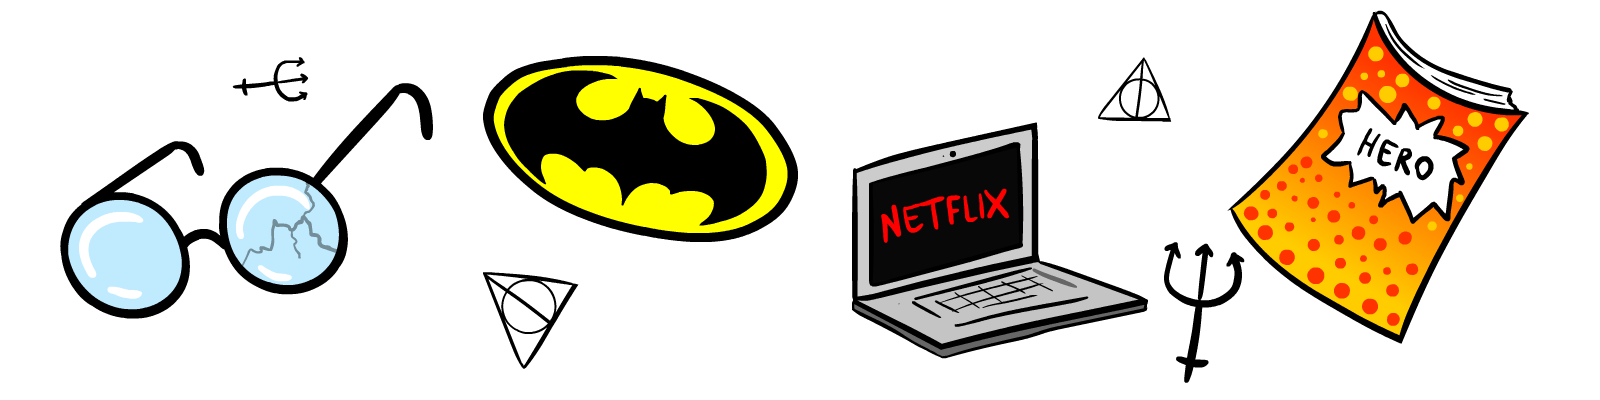 Occhiali Harry Potter, simbolo Batman, computer con Netflix, fumetti